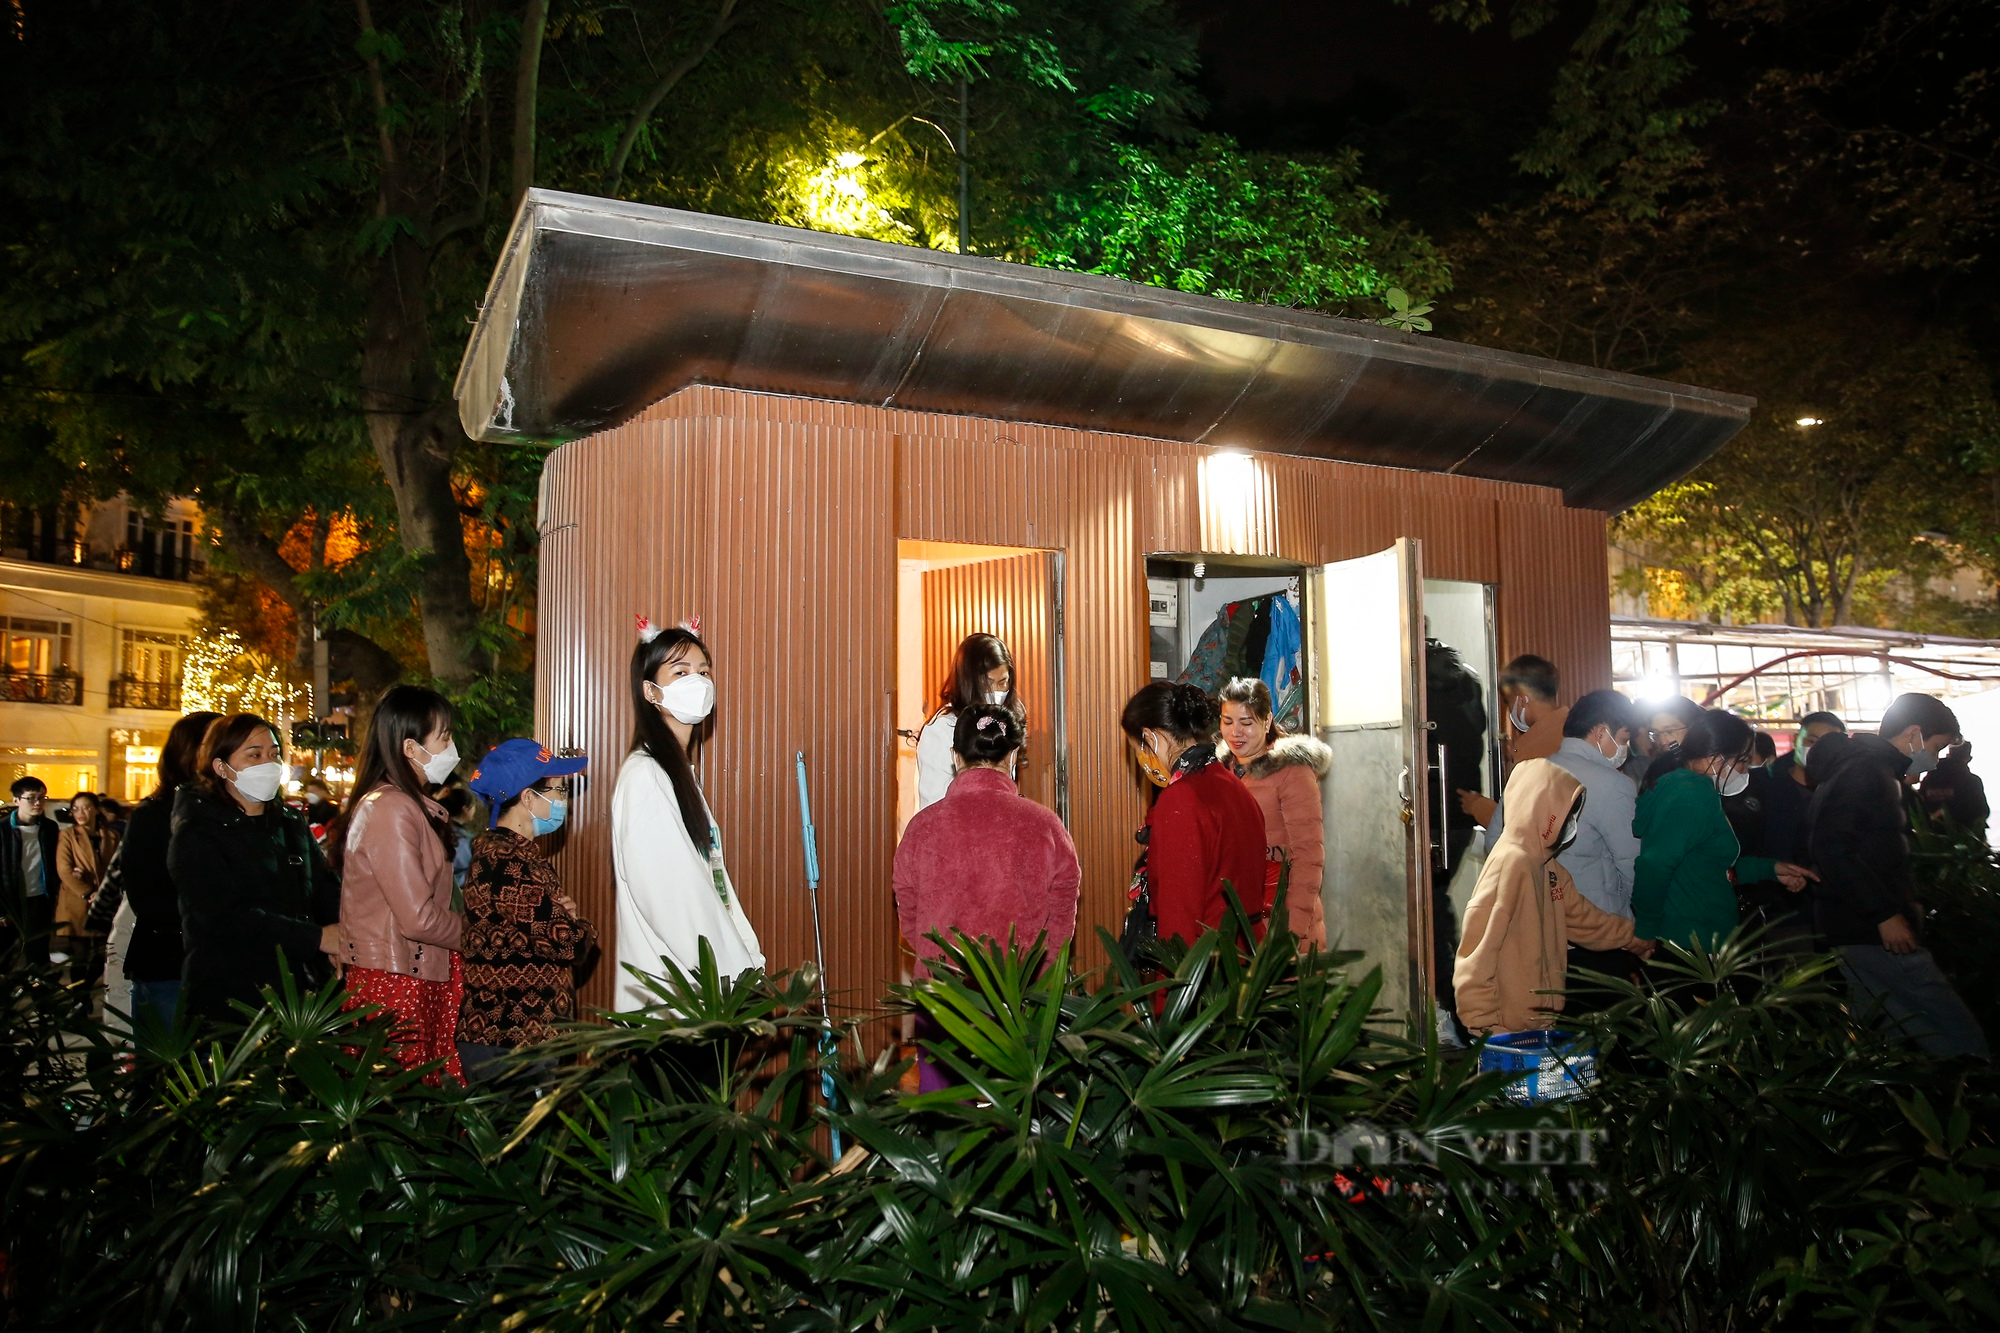 Xếp hàng chờ cả tiếng để tới lượt đi vệ sinh trong đêm Noel tại Hà Nội - Ảnh 8.